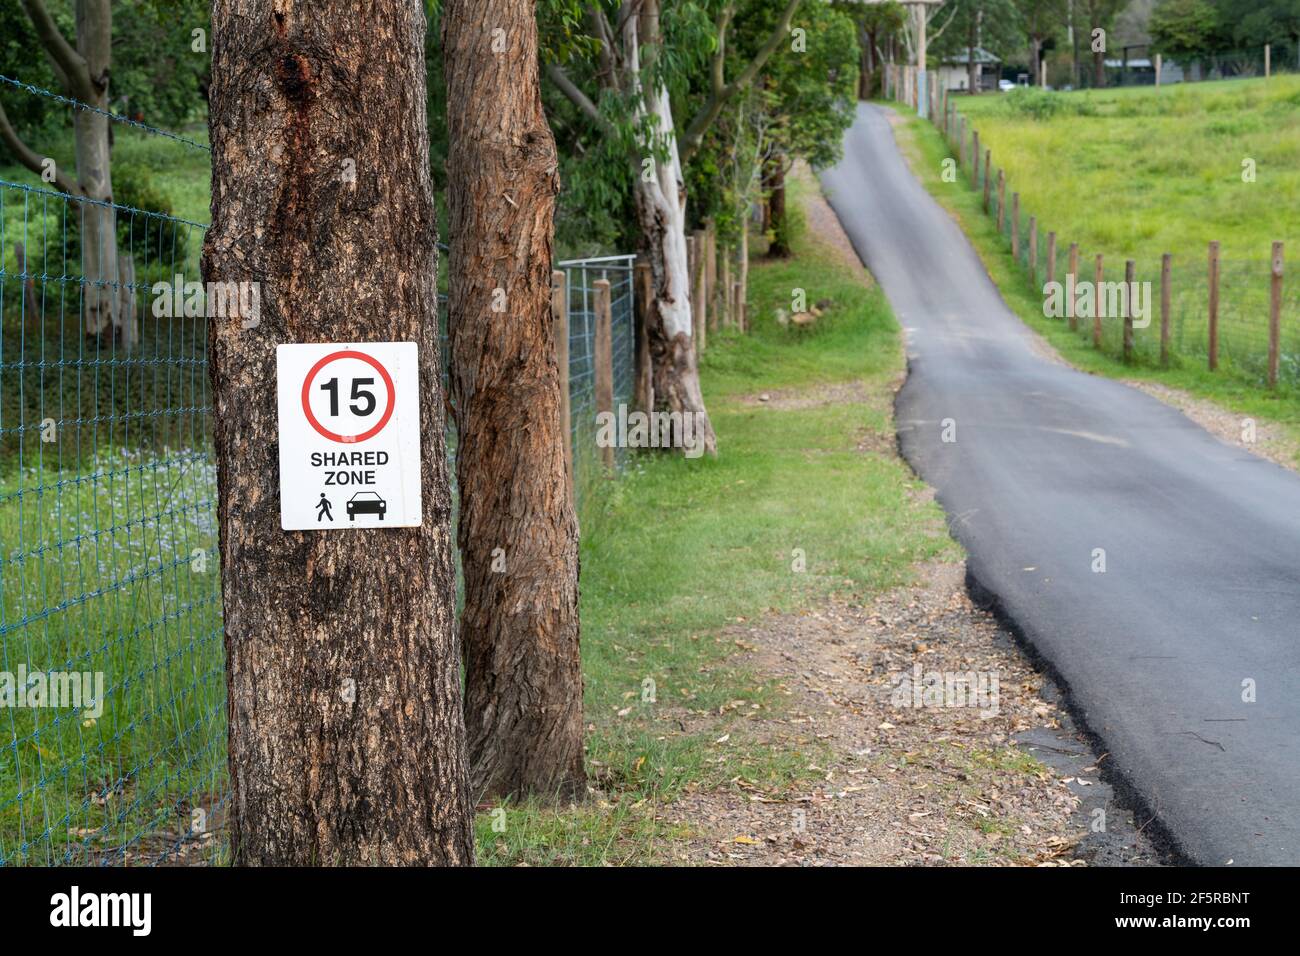 Speed und Shared Road Zeichen auf Baum neben schmalen Straße. Stockfoto